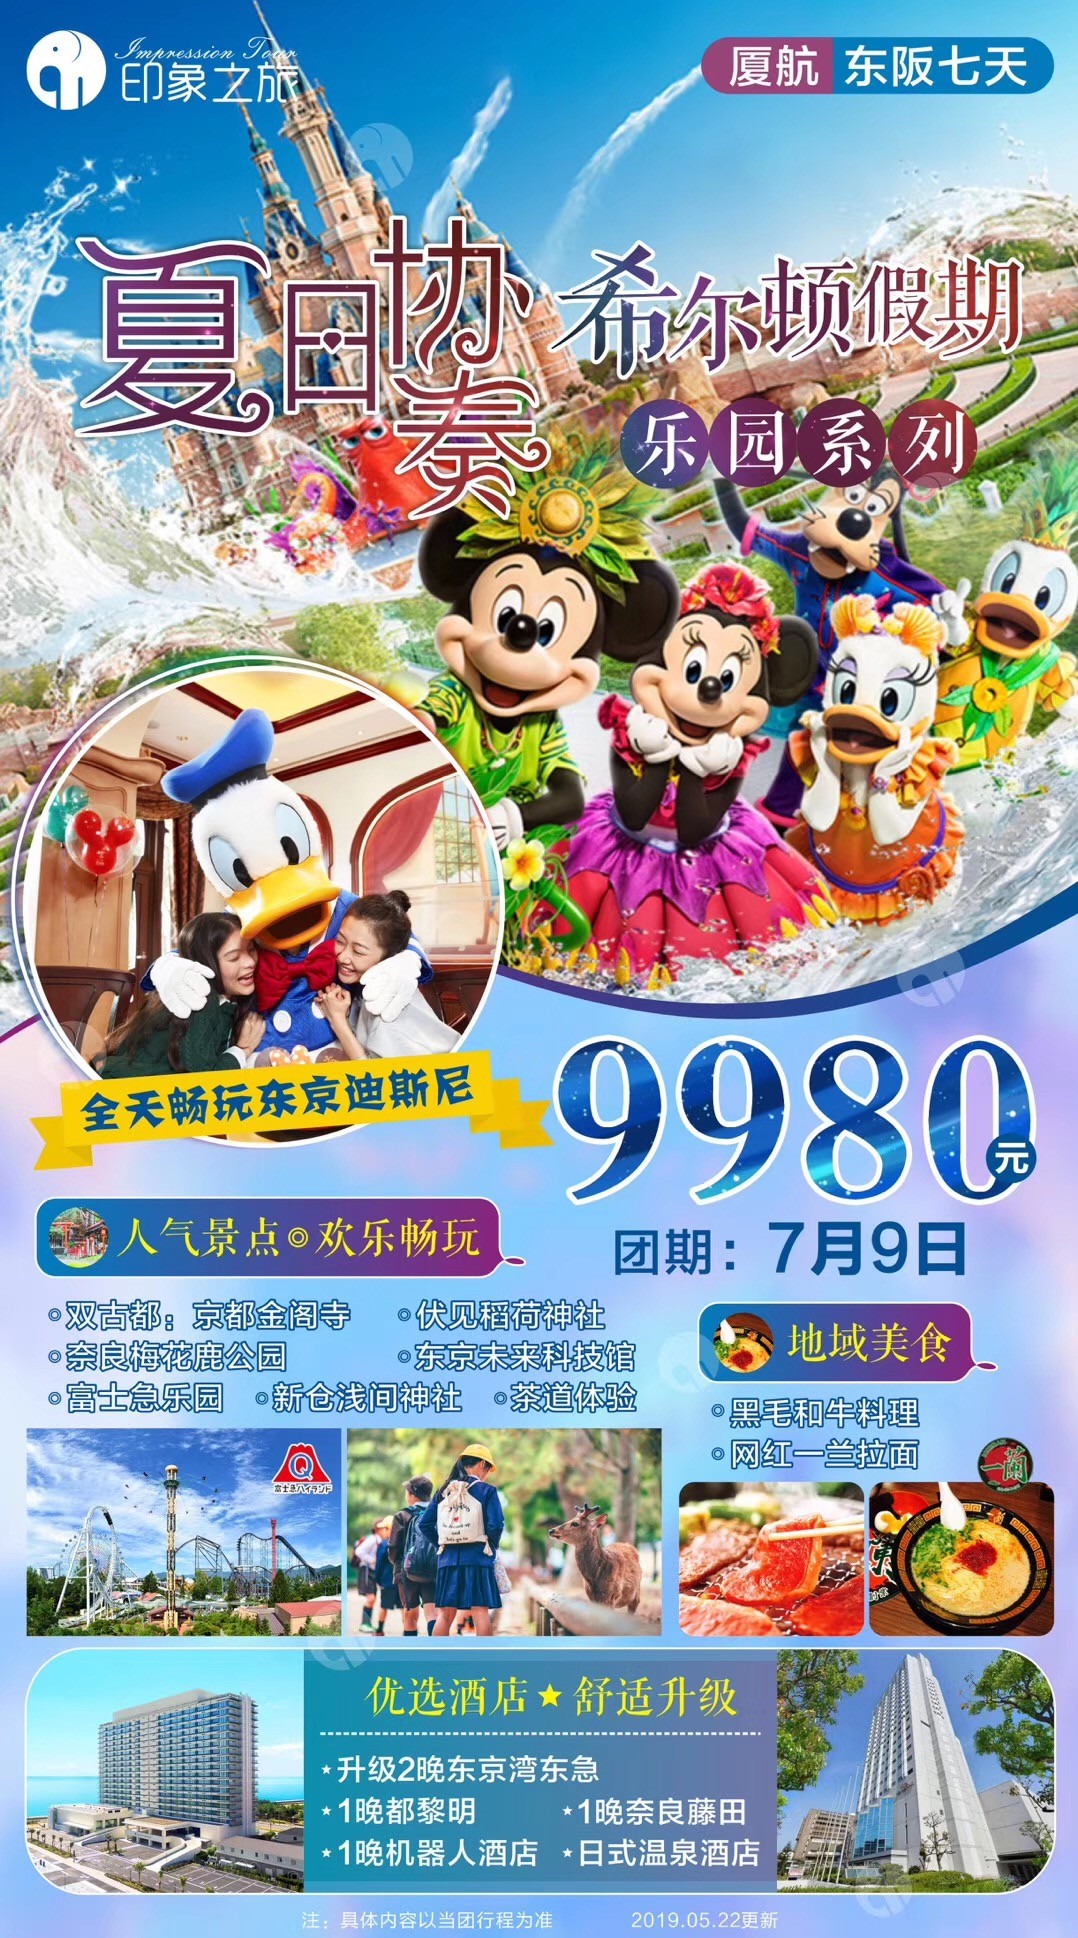 日本旅游团报价|暑假7-8月去日本旅游图片海报_厦门国旅官网